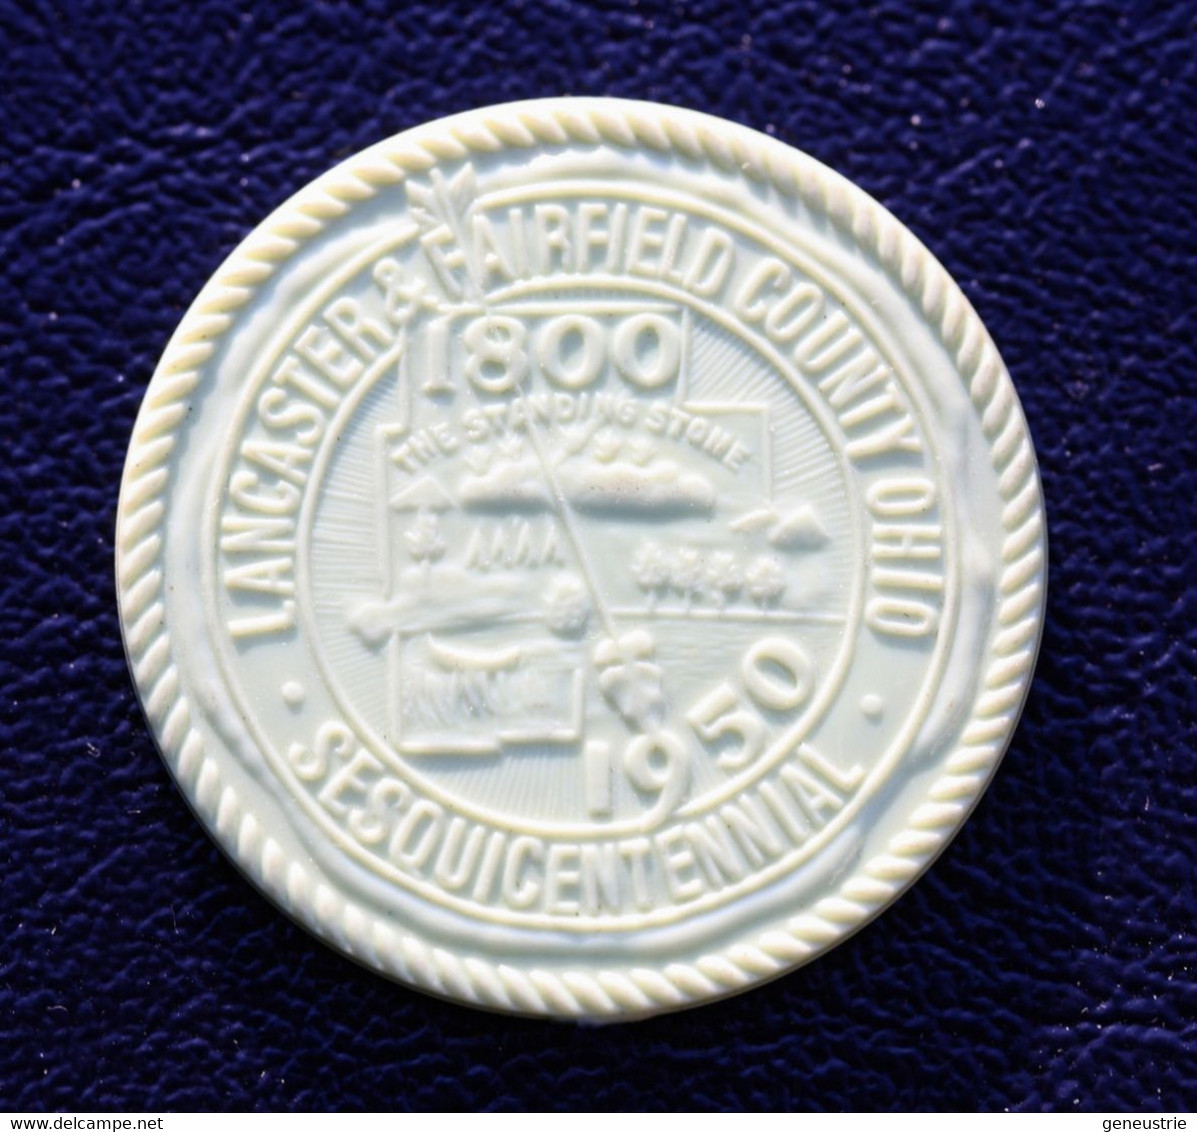 Beau Jeton De Nécessité 1800-1950 "10 Cent - Sesqui-centenal Souvenir Token - Lancaster & Fairfield County Ohio - USA - Notgeld